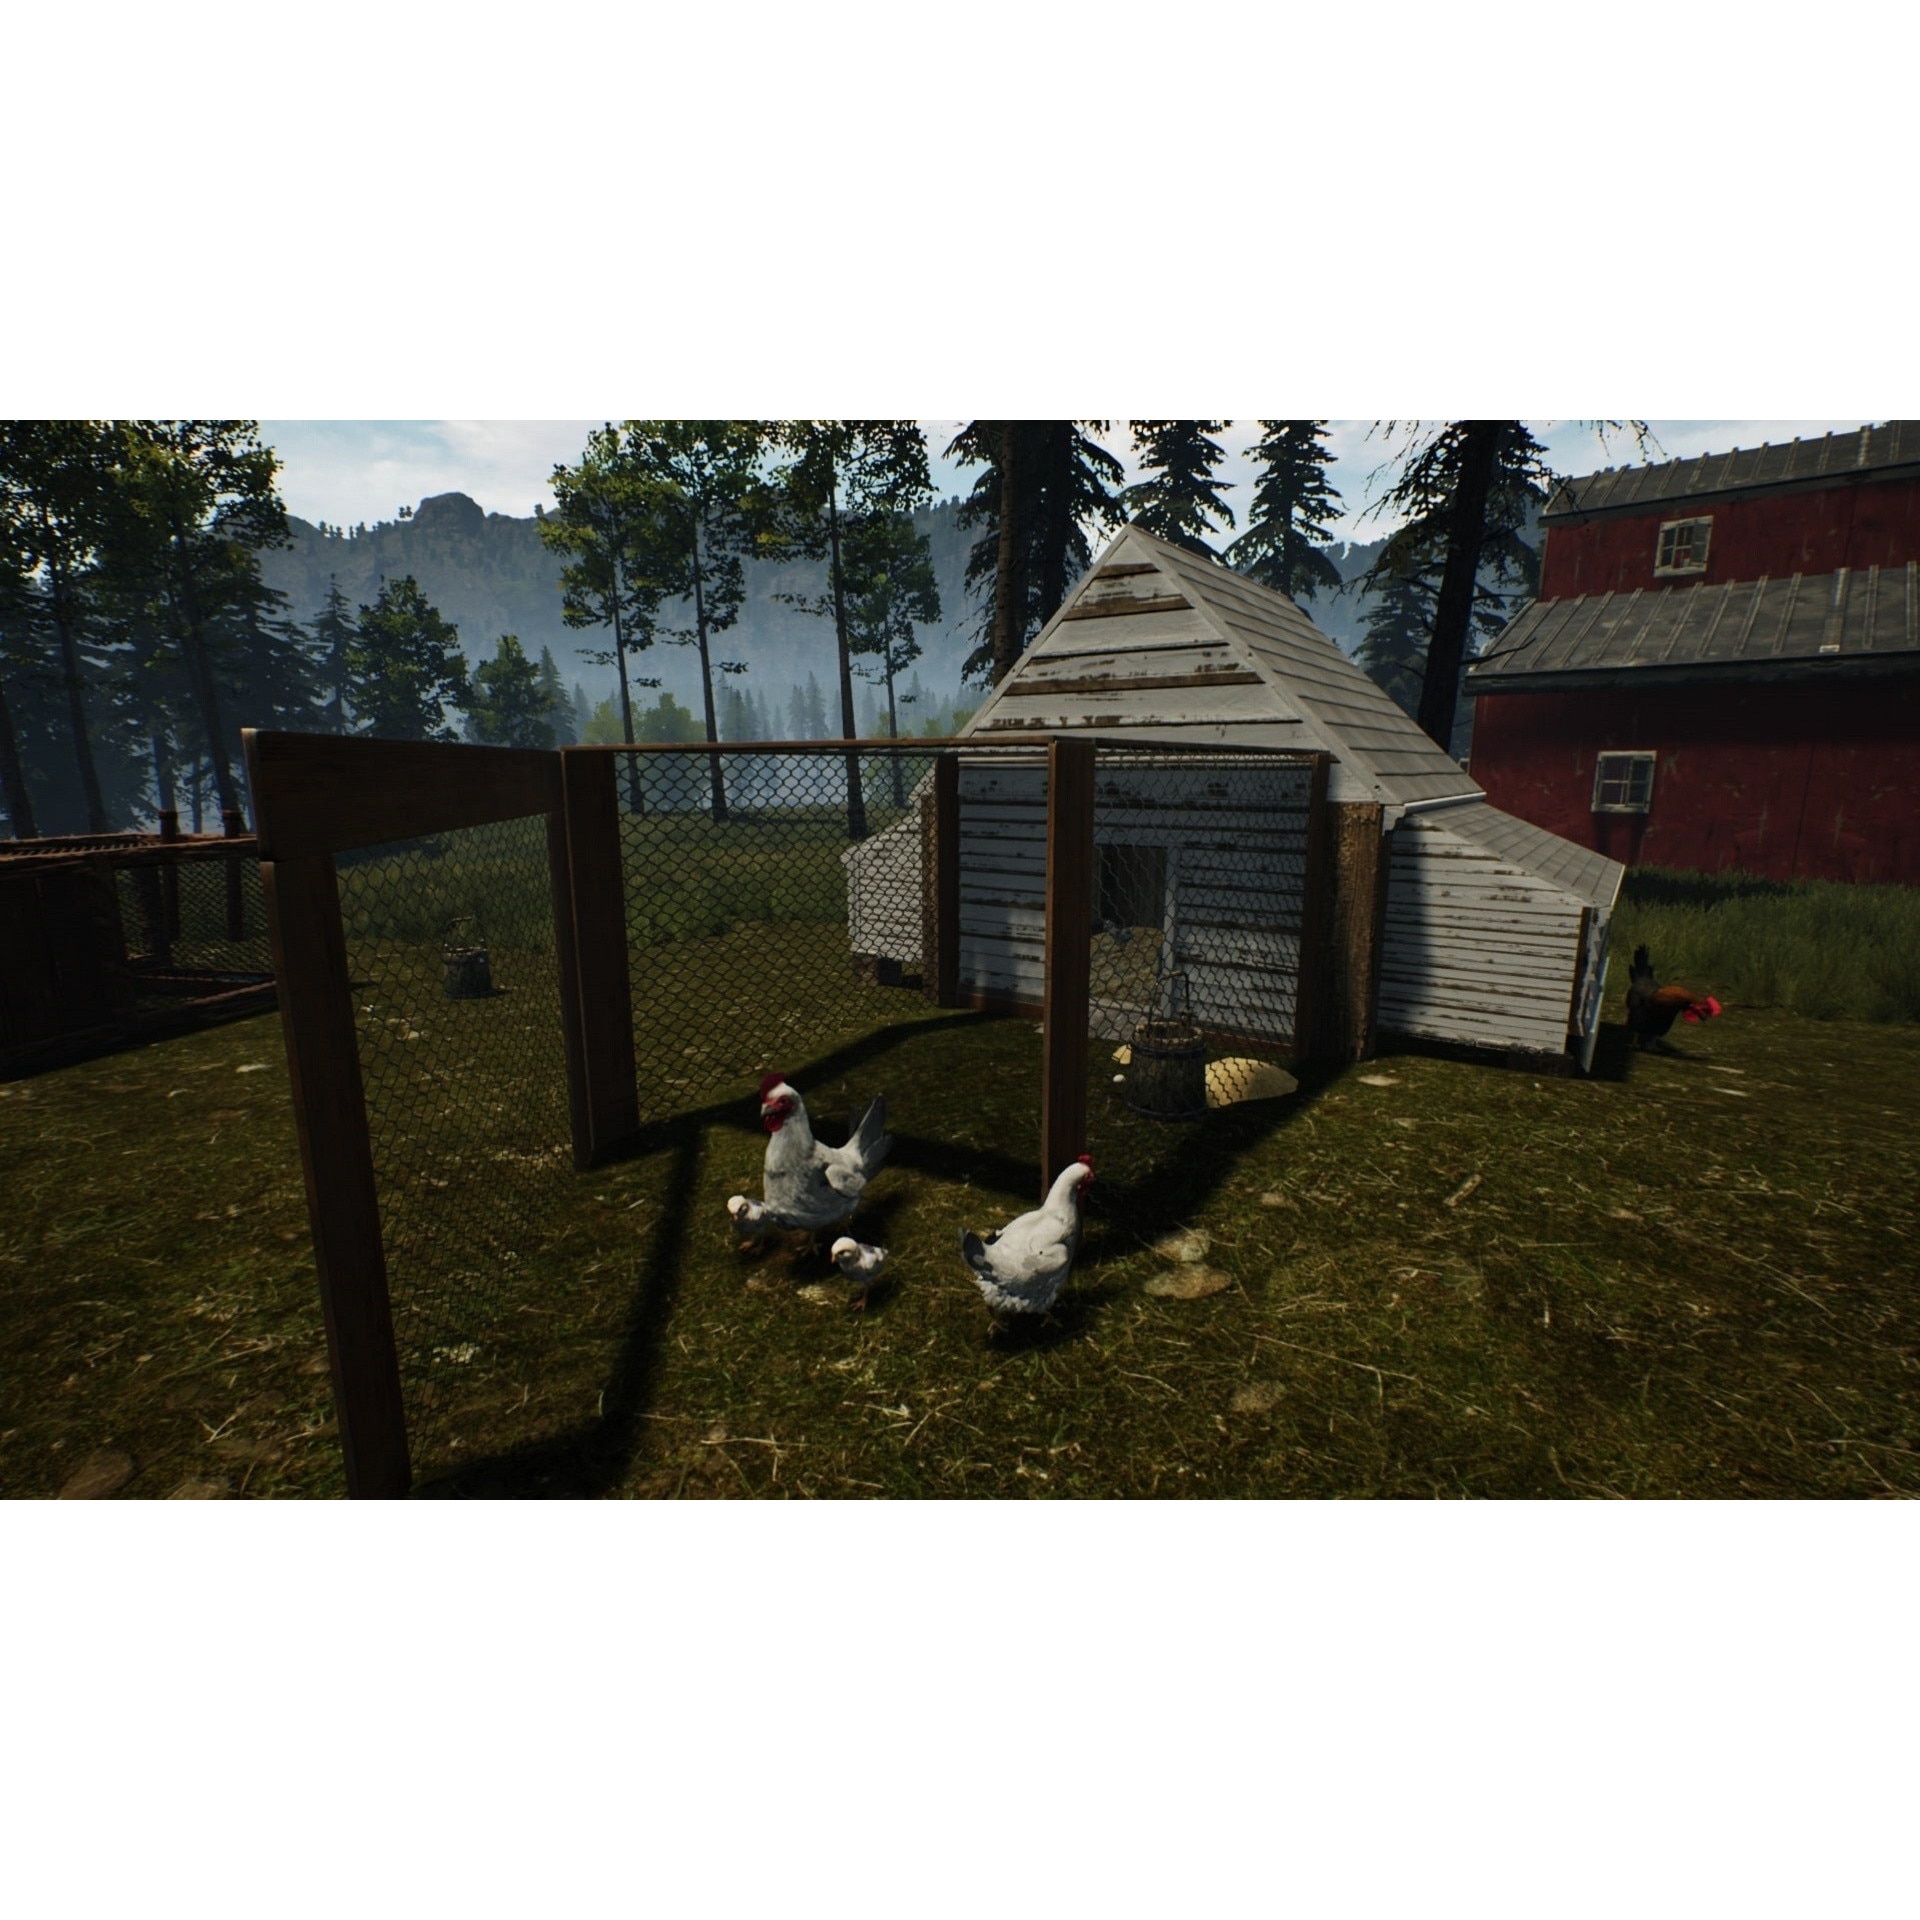 Ranch Simulator (PC) Key preço mais barato: 9,91€ para Steam